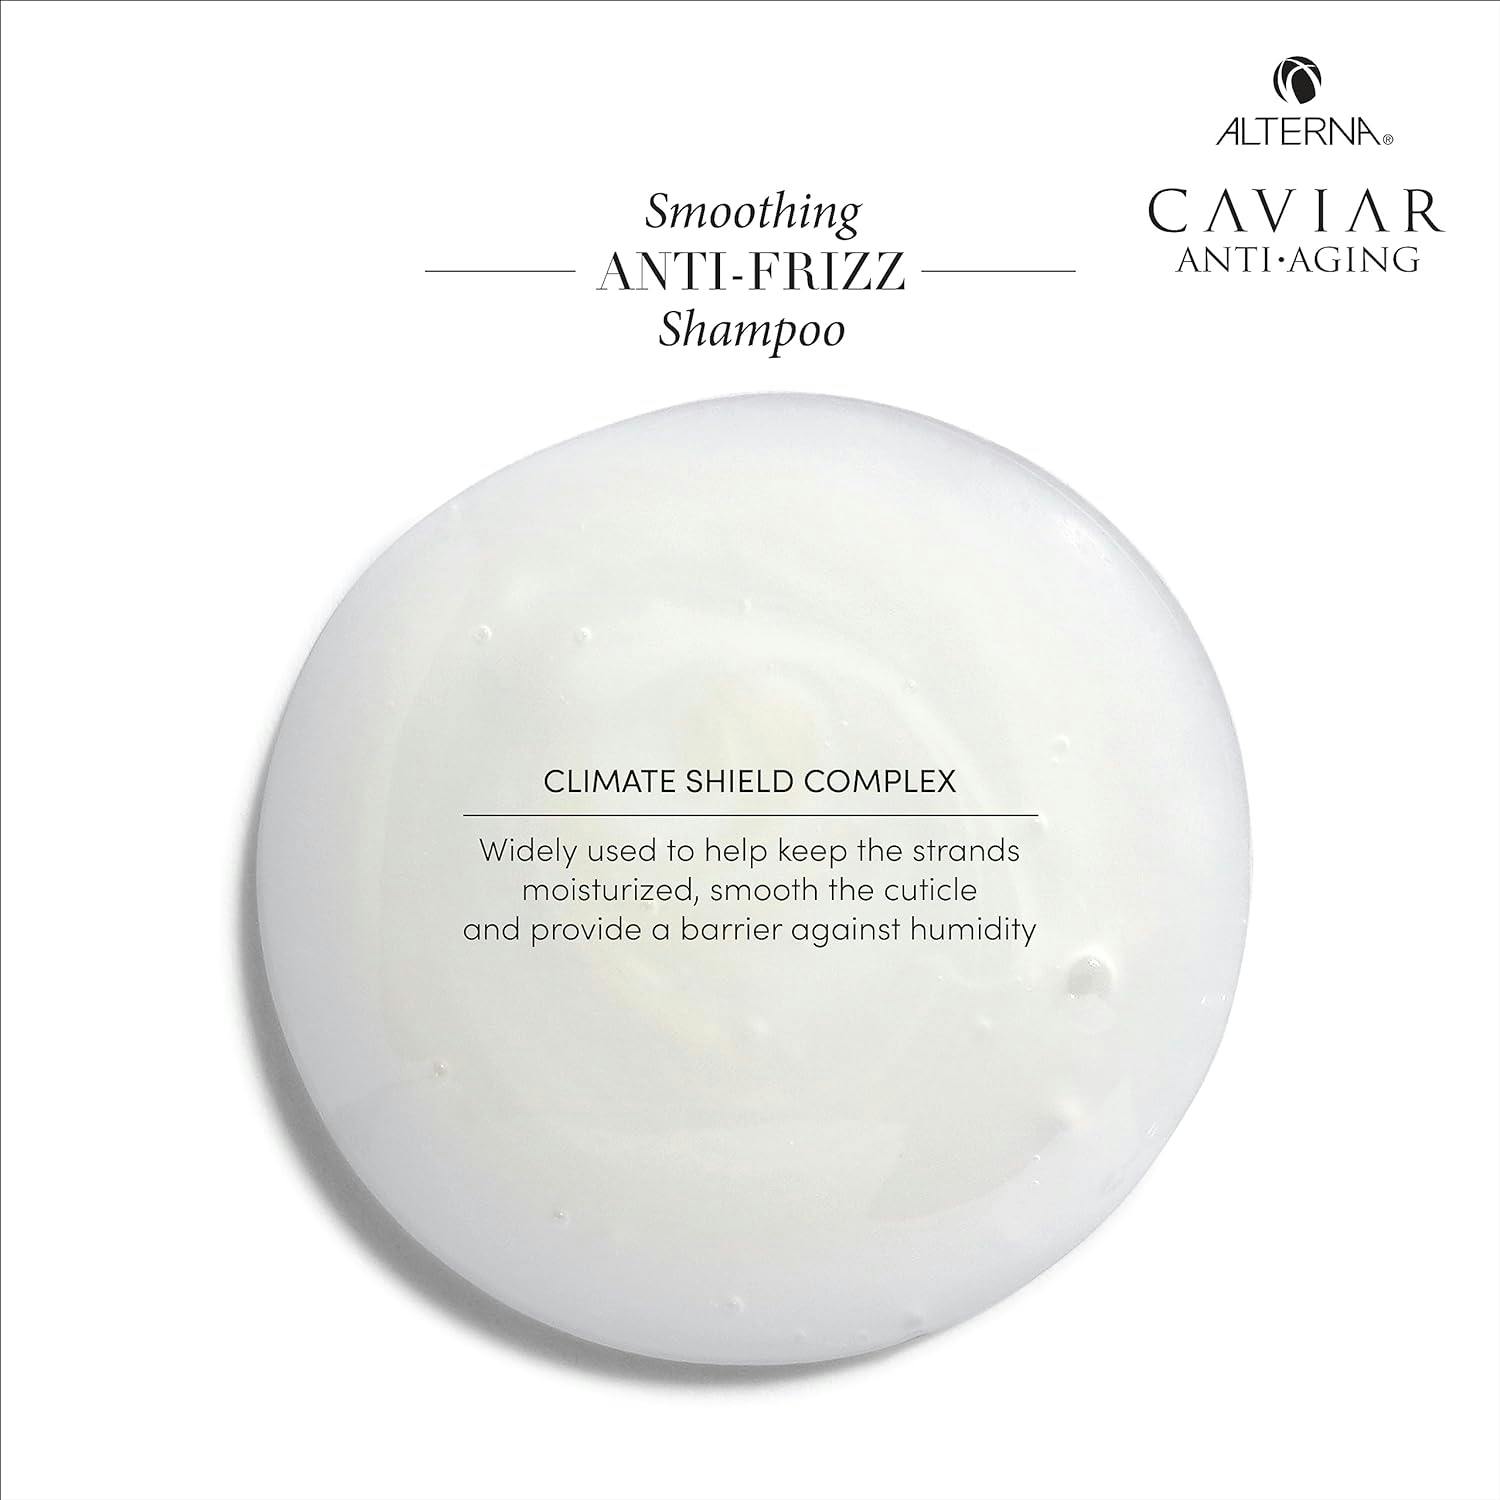 Alterna Caviar Smoothing Anti-Frizz Shampoo 487ml